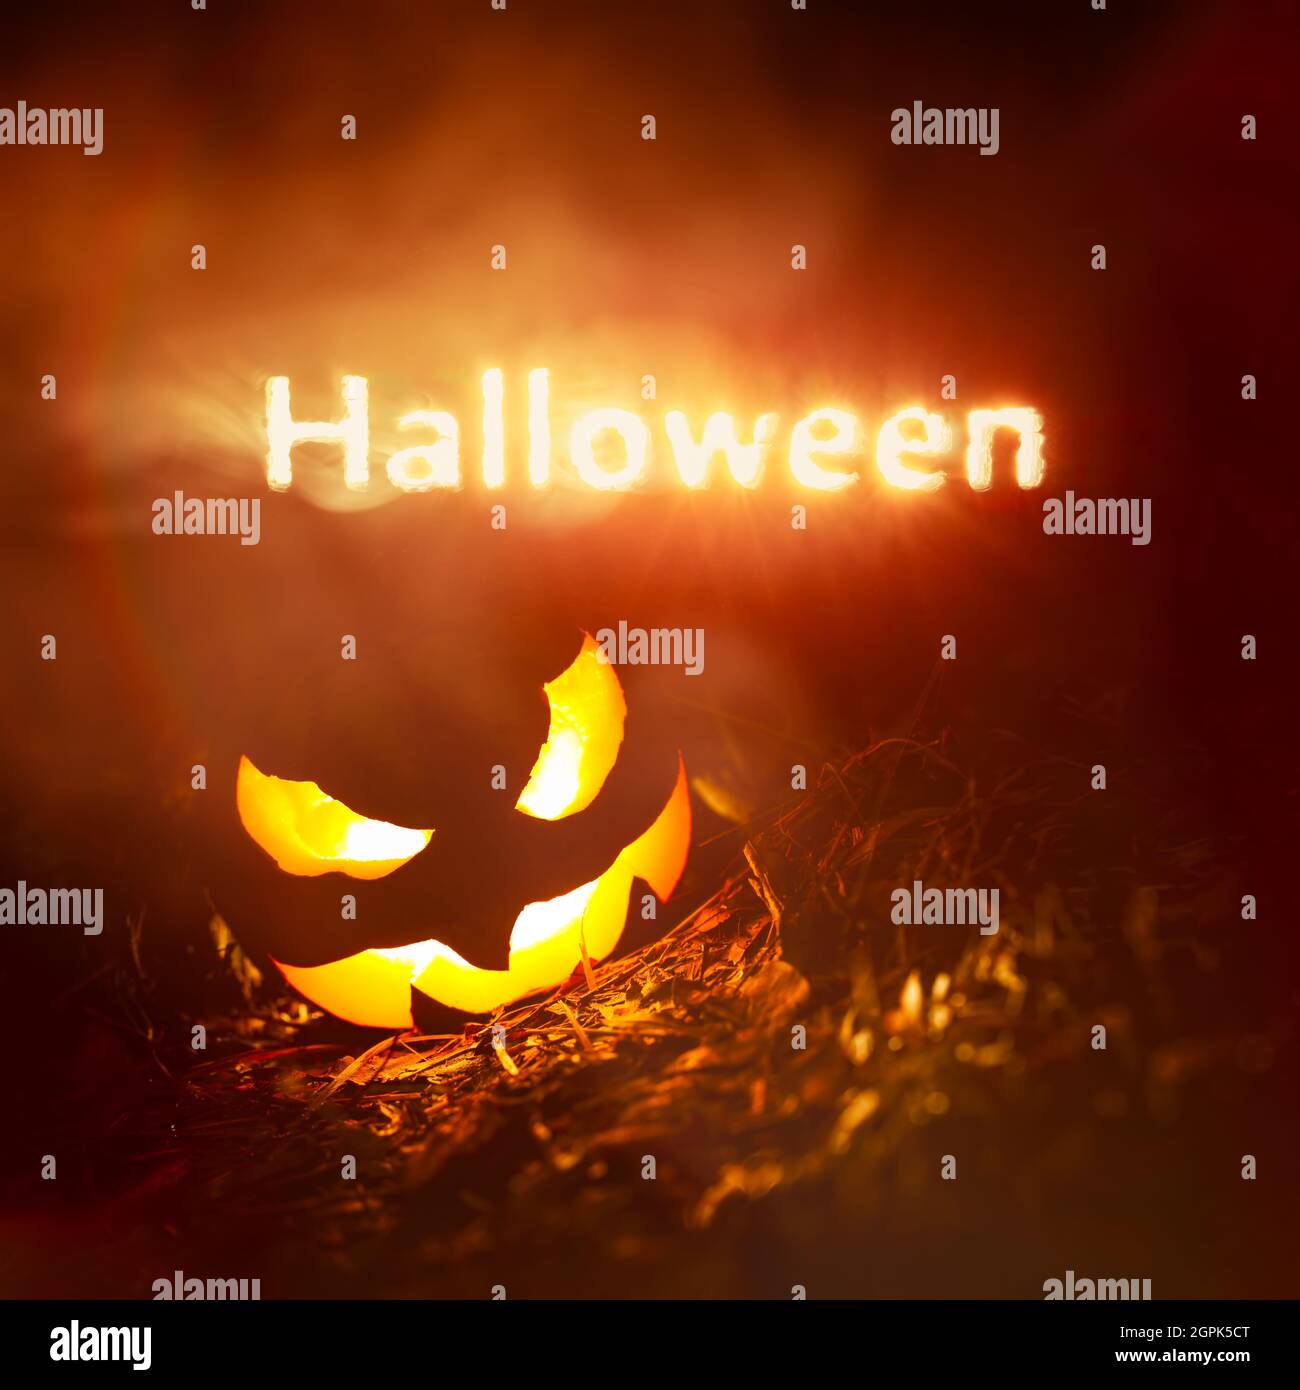 Texte d'Halloween éclatant de fumée rouge et jaune la nuit au-dessus d'une citrouille créepy Jack o Lantern Banque D'Images